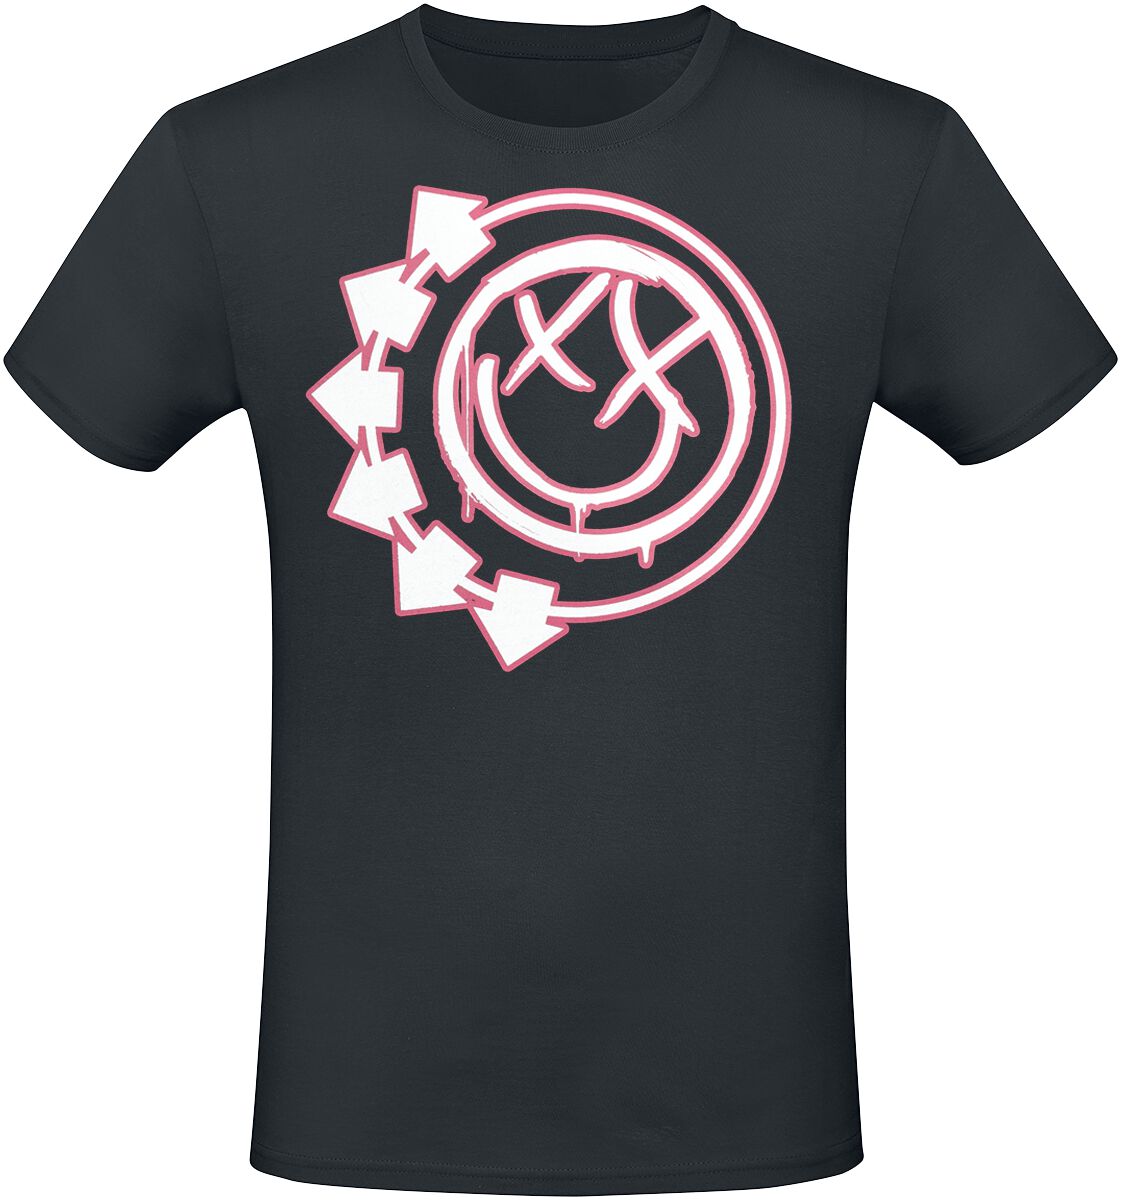 Blink-182 T-Shirt - Harrows Smiley - S bis 3XL - für Männer - Größe XXL - schwarz  - Lizenziertes Merchandise!